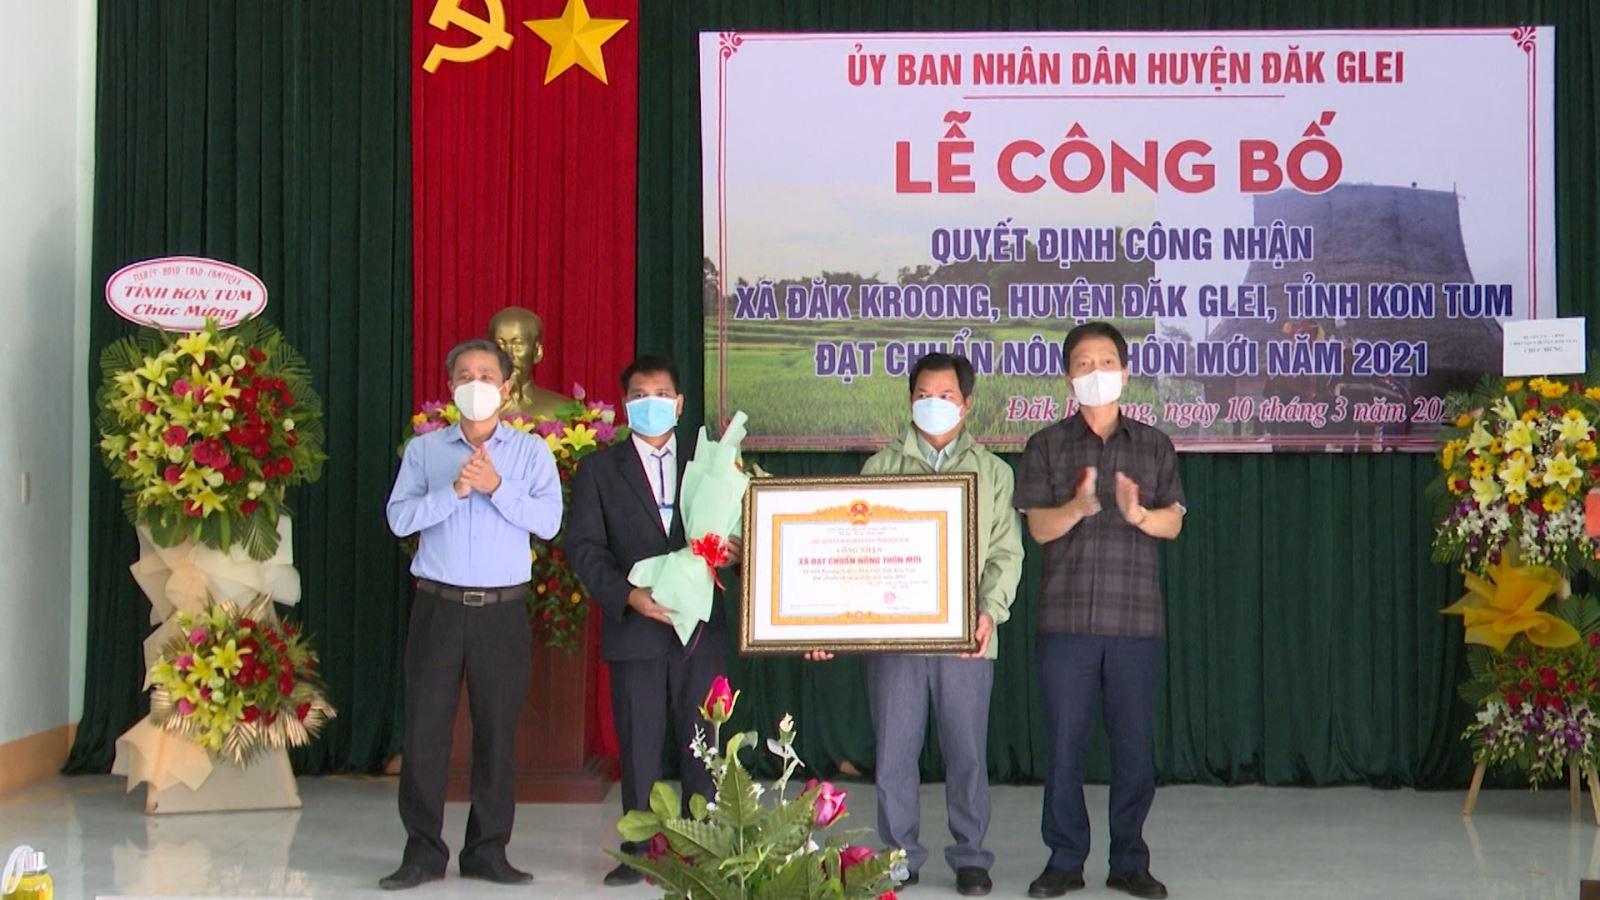 Lễ công bố Quyết định của Chủ tịch UBND tỉnh Kon Tum công nhận xã Đăk Kroong đạt chuẩn Nông thôn mới